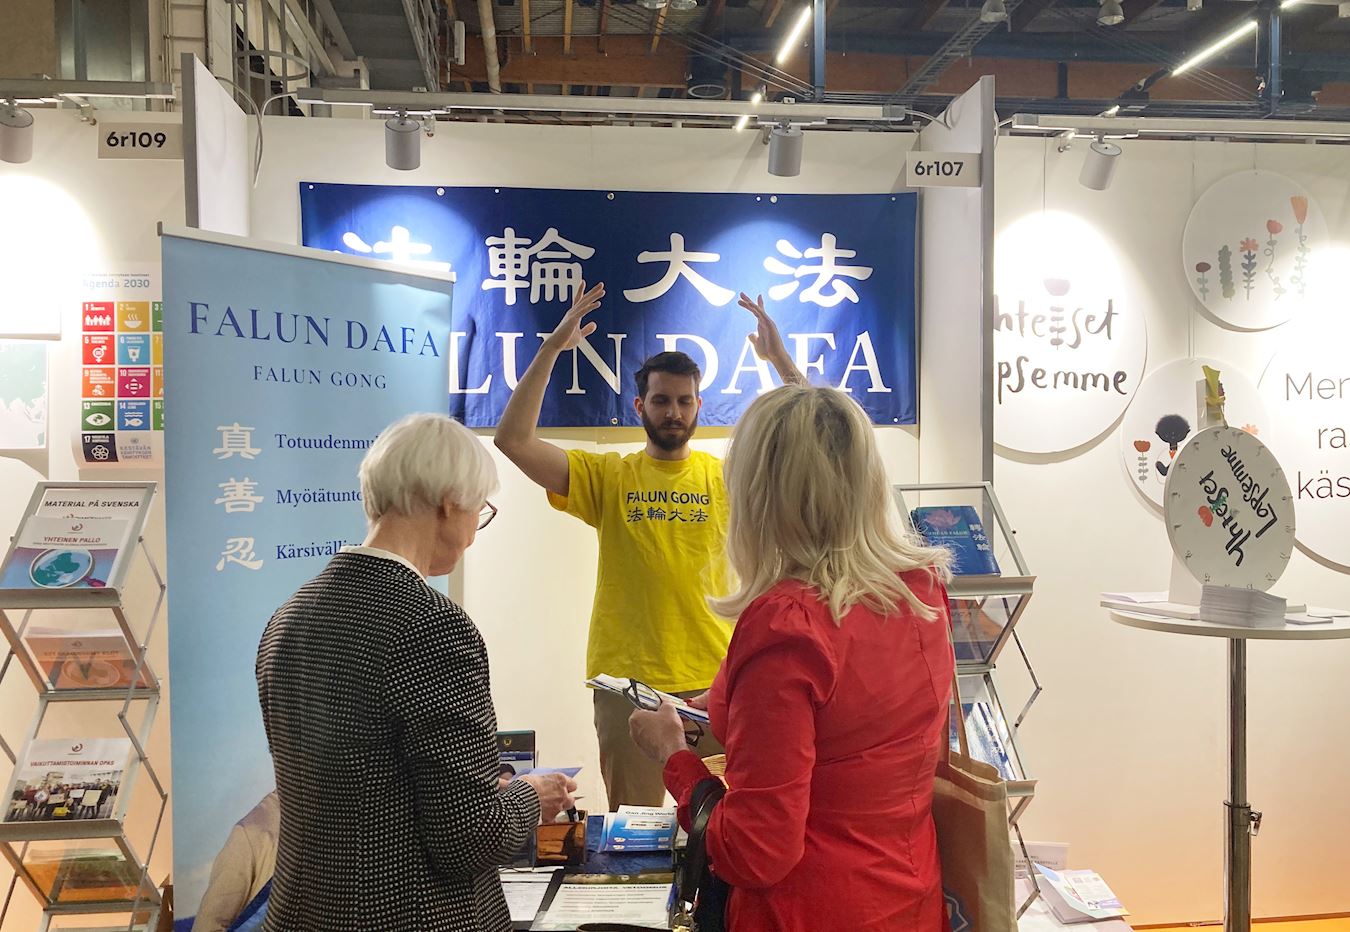 Image for article Finlande : Des pratiquants présentent le Falun Dafa lors d’une exposition nationale sur l’éducation